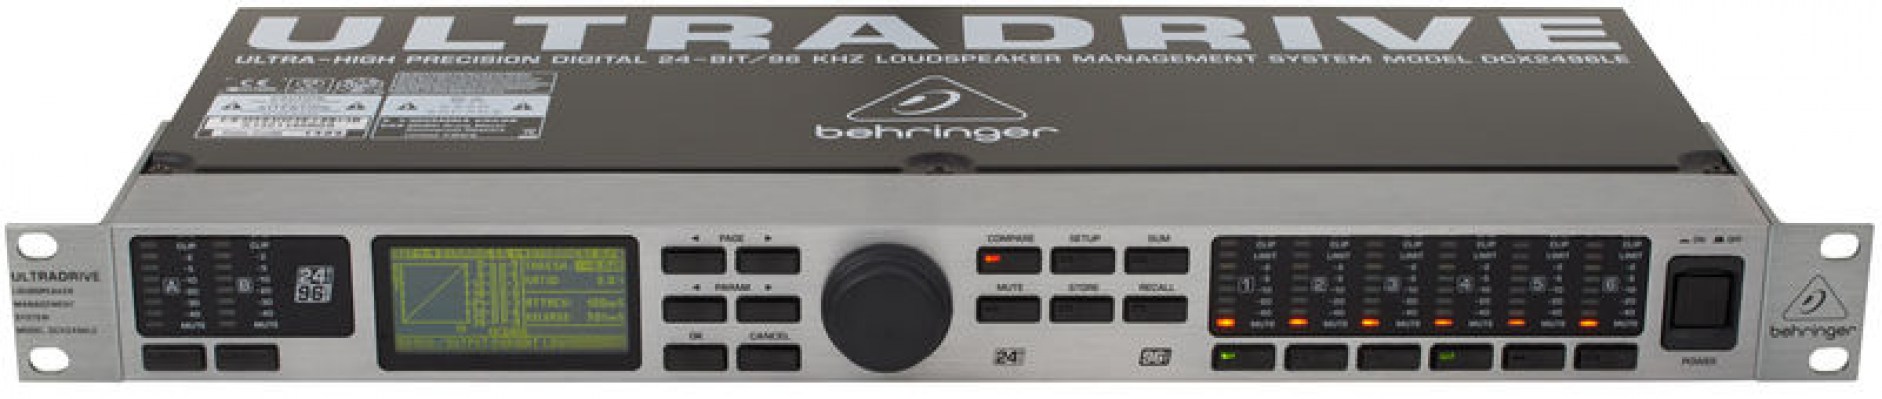 Behringer DCX2496LE Ultradrive Pro